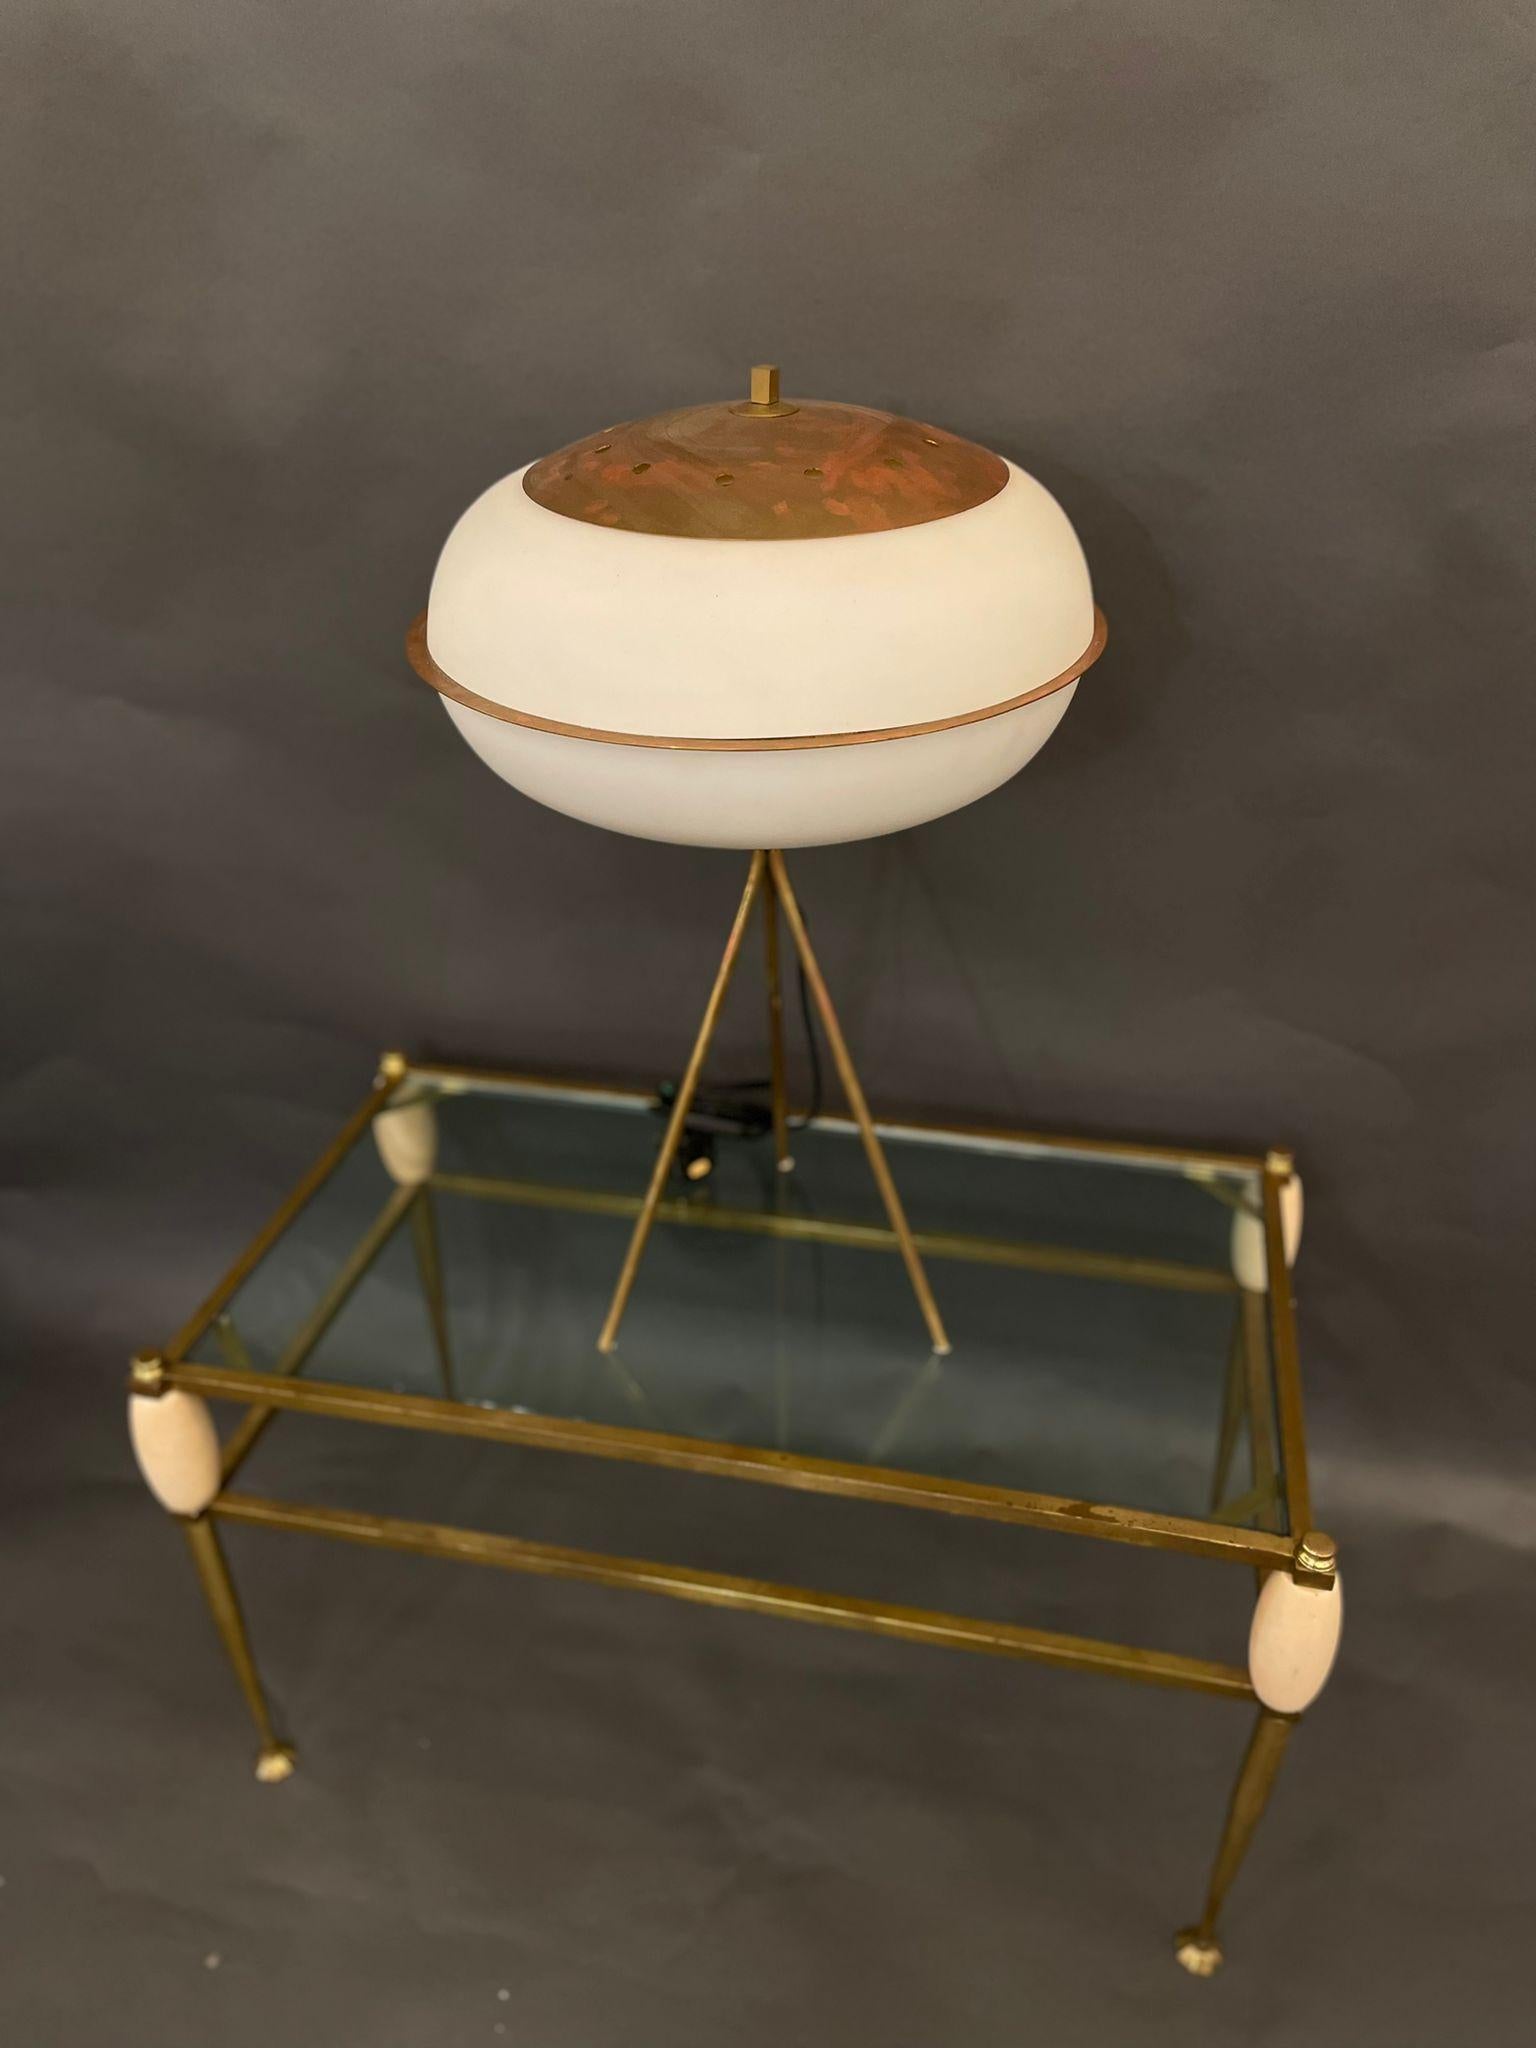 Une lampe de table italienne moderniste avec un abat-jour blanc givré et des pieds en laiton, vers les années 1970.